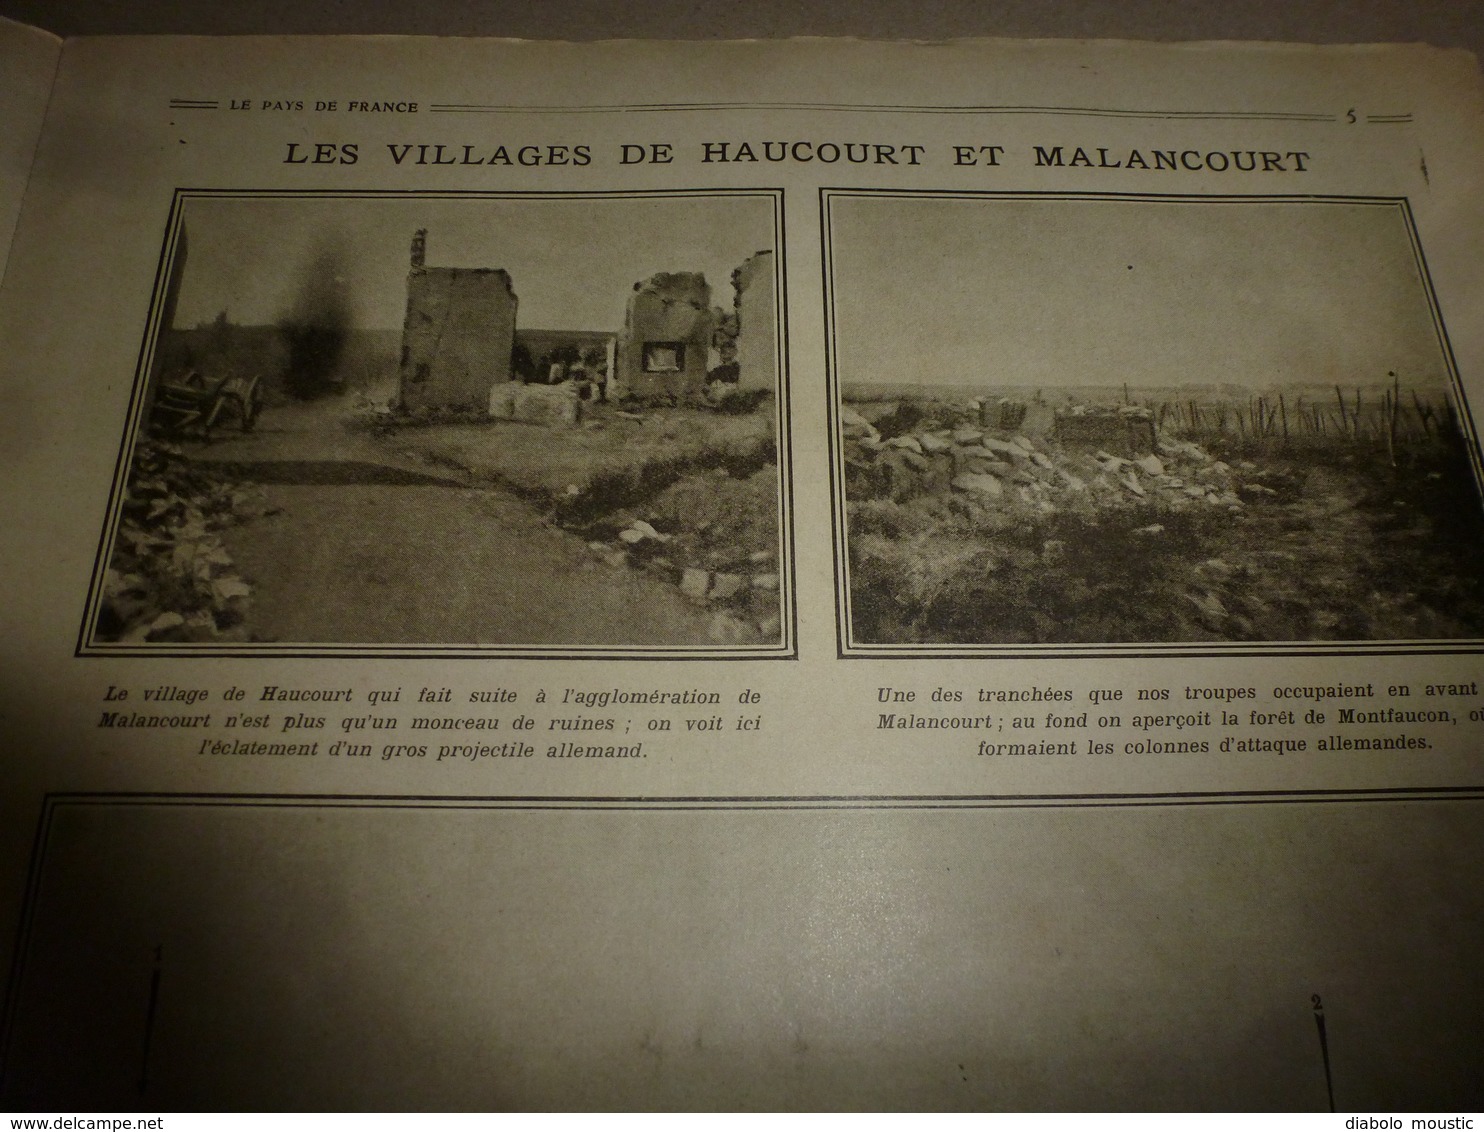 1916 LPDF: Haucourt,Malancourt;Porrentruy; Le Baumé;Suisse;Alexandre de Serbie; Elisabeth de Belgique ;etc